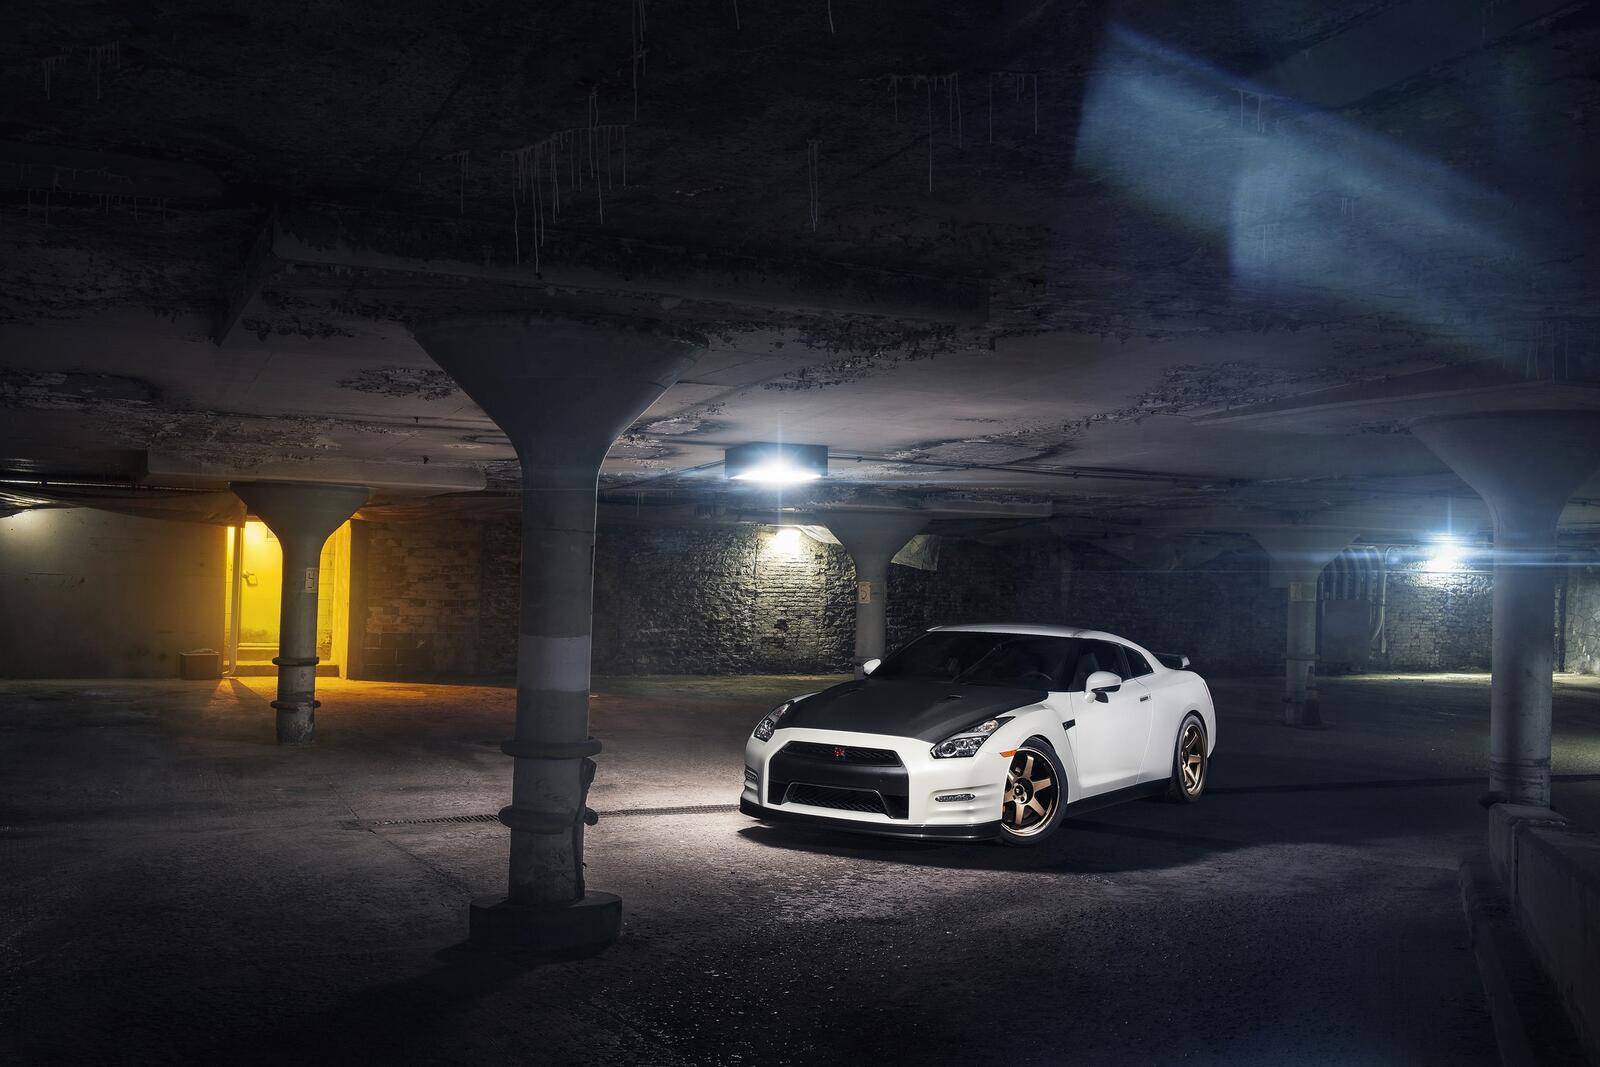 Free photo A white Nissan GT R in an underground parking garage